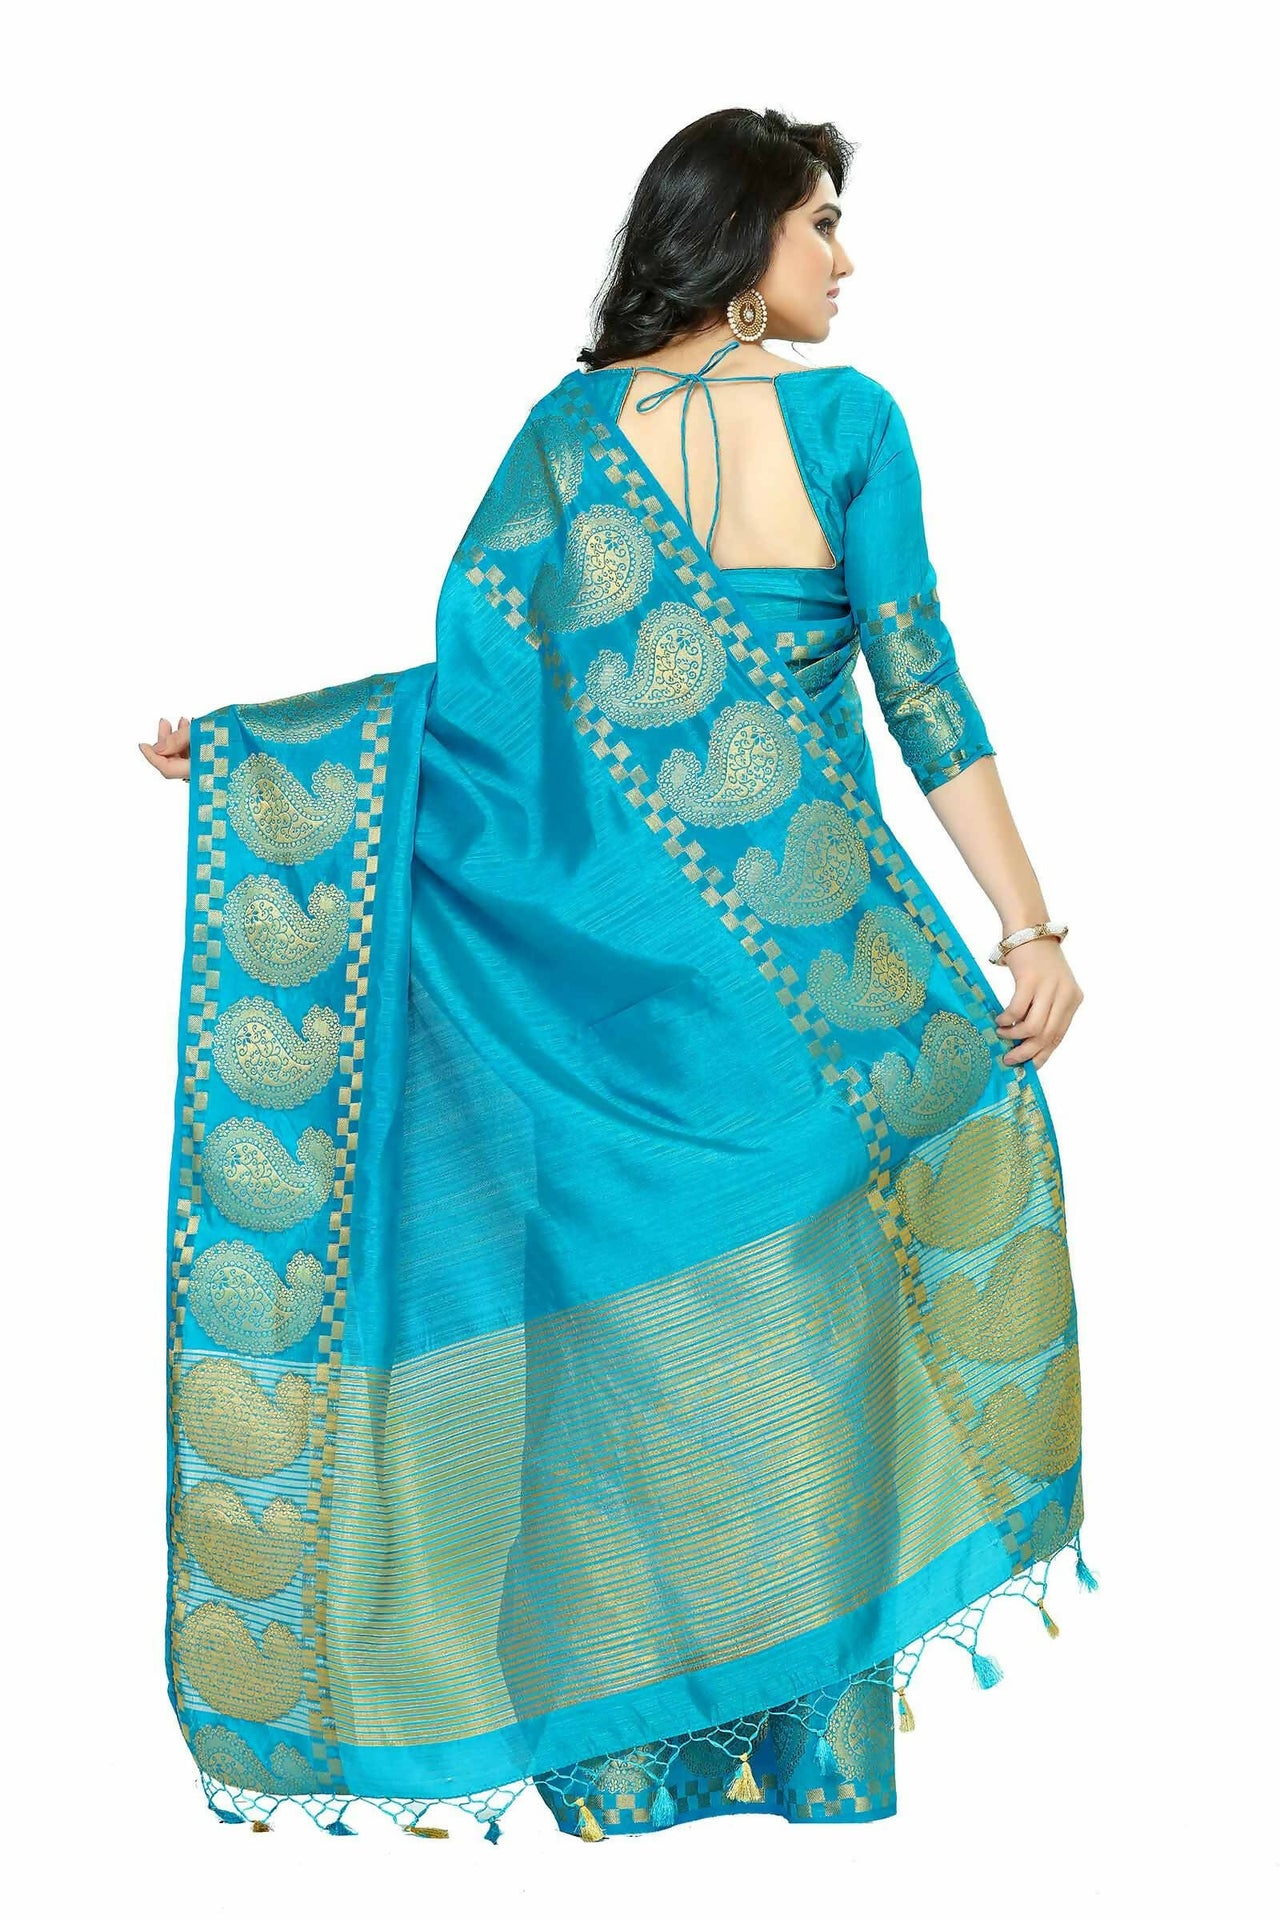 Mimosa Women's Banarasi Tussar Silk Turquoise Blue Saree - Distacart